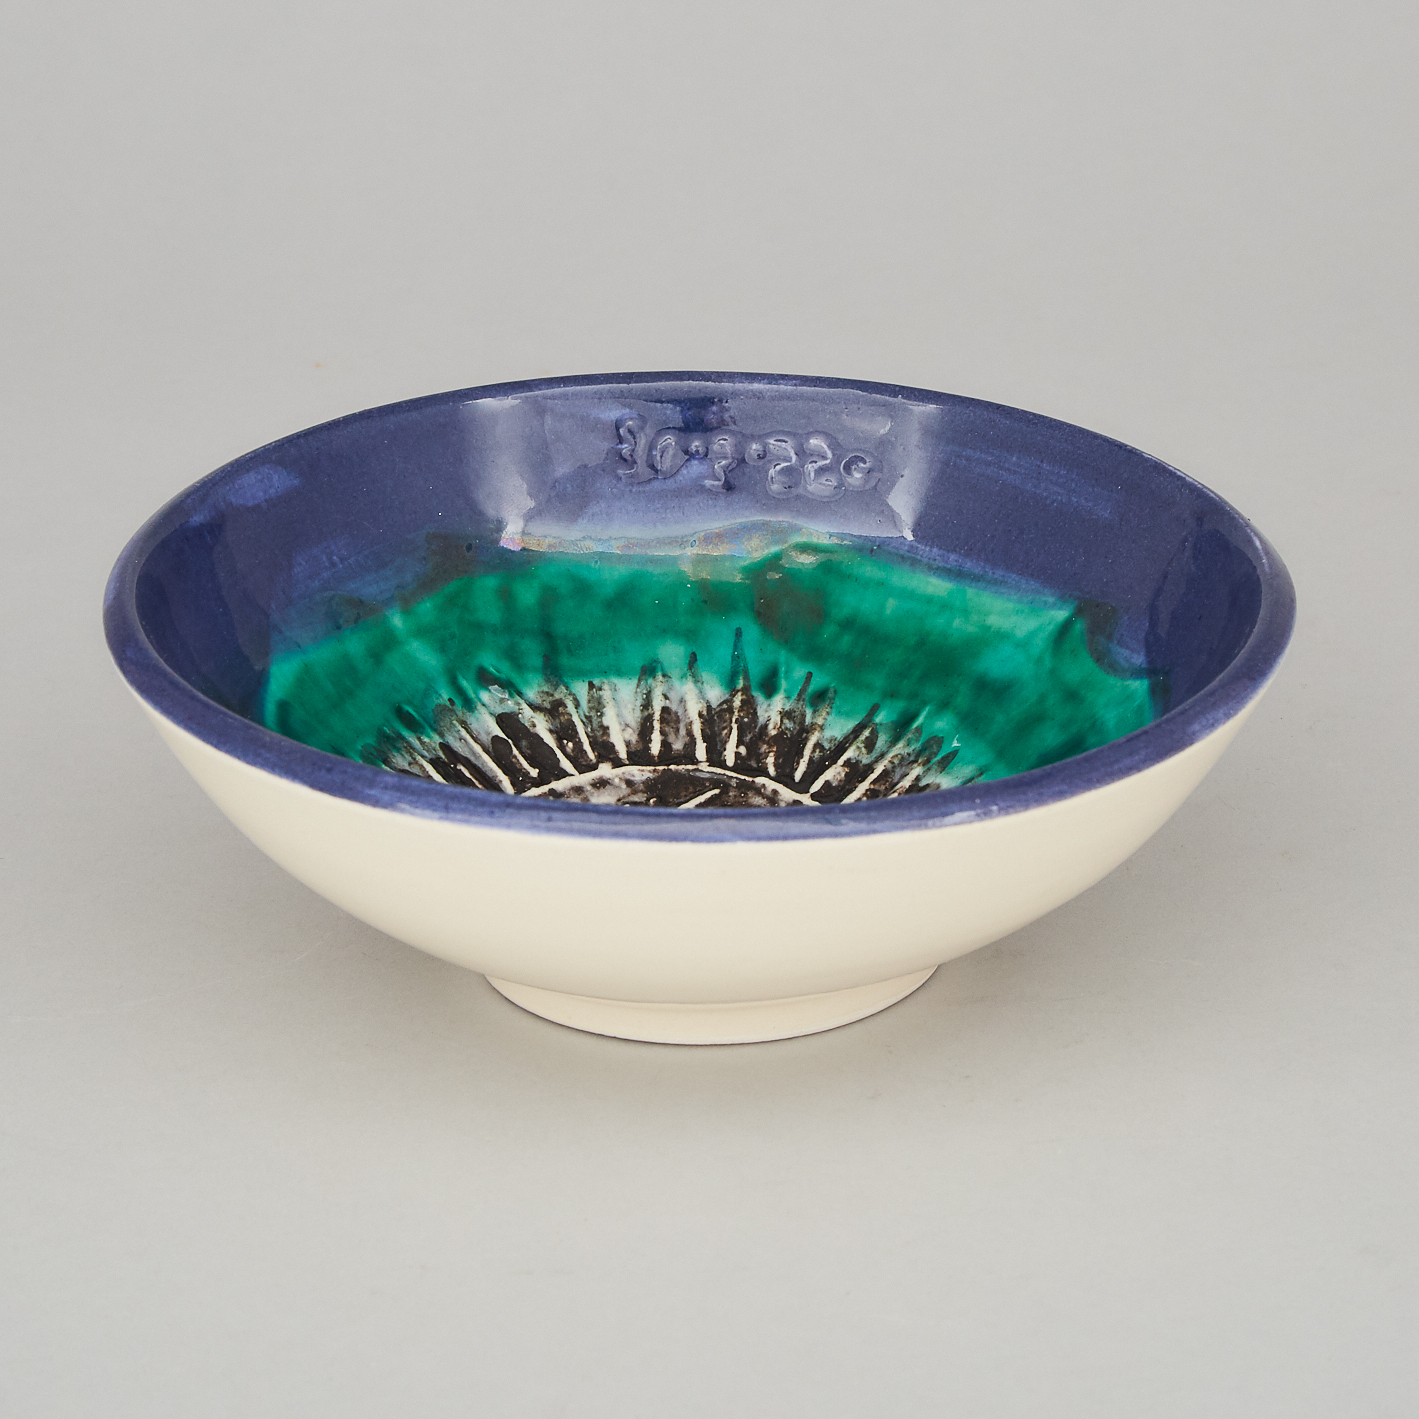 ‘Oursin’, Pablo Picasso (1881-1973), Ceramic Bowl, 72/150, c.1955